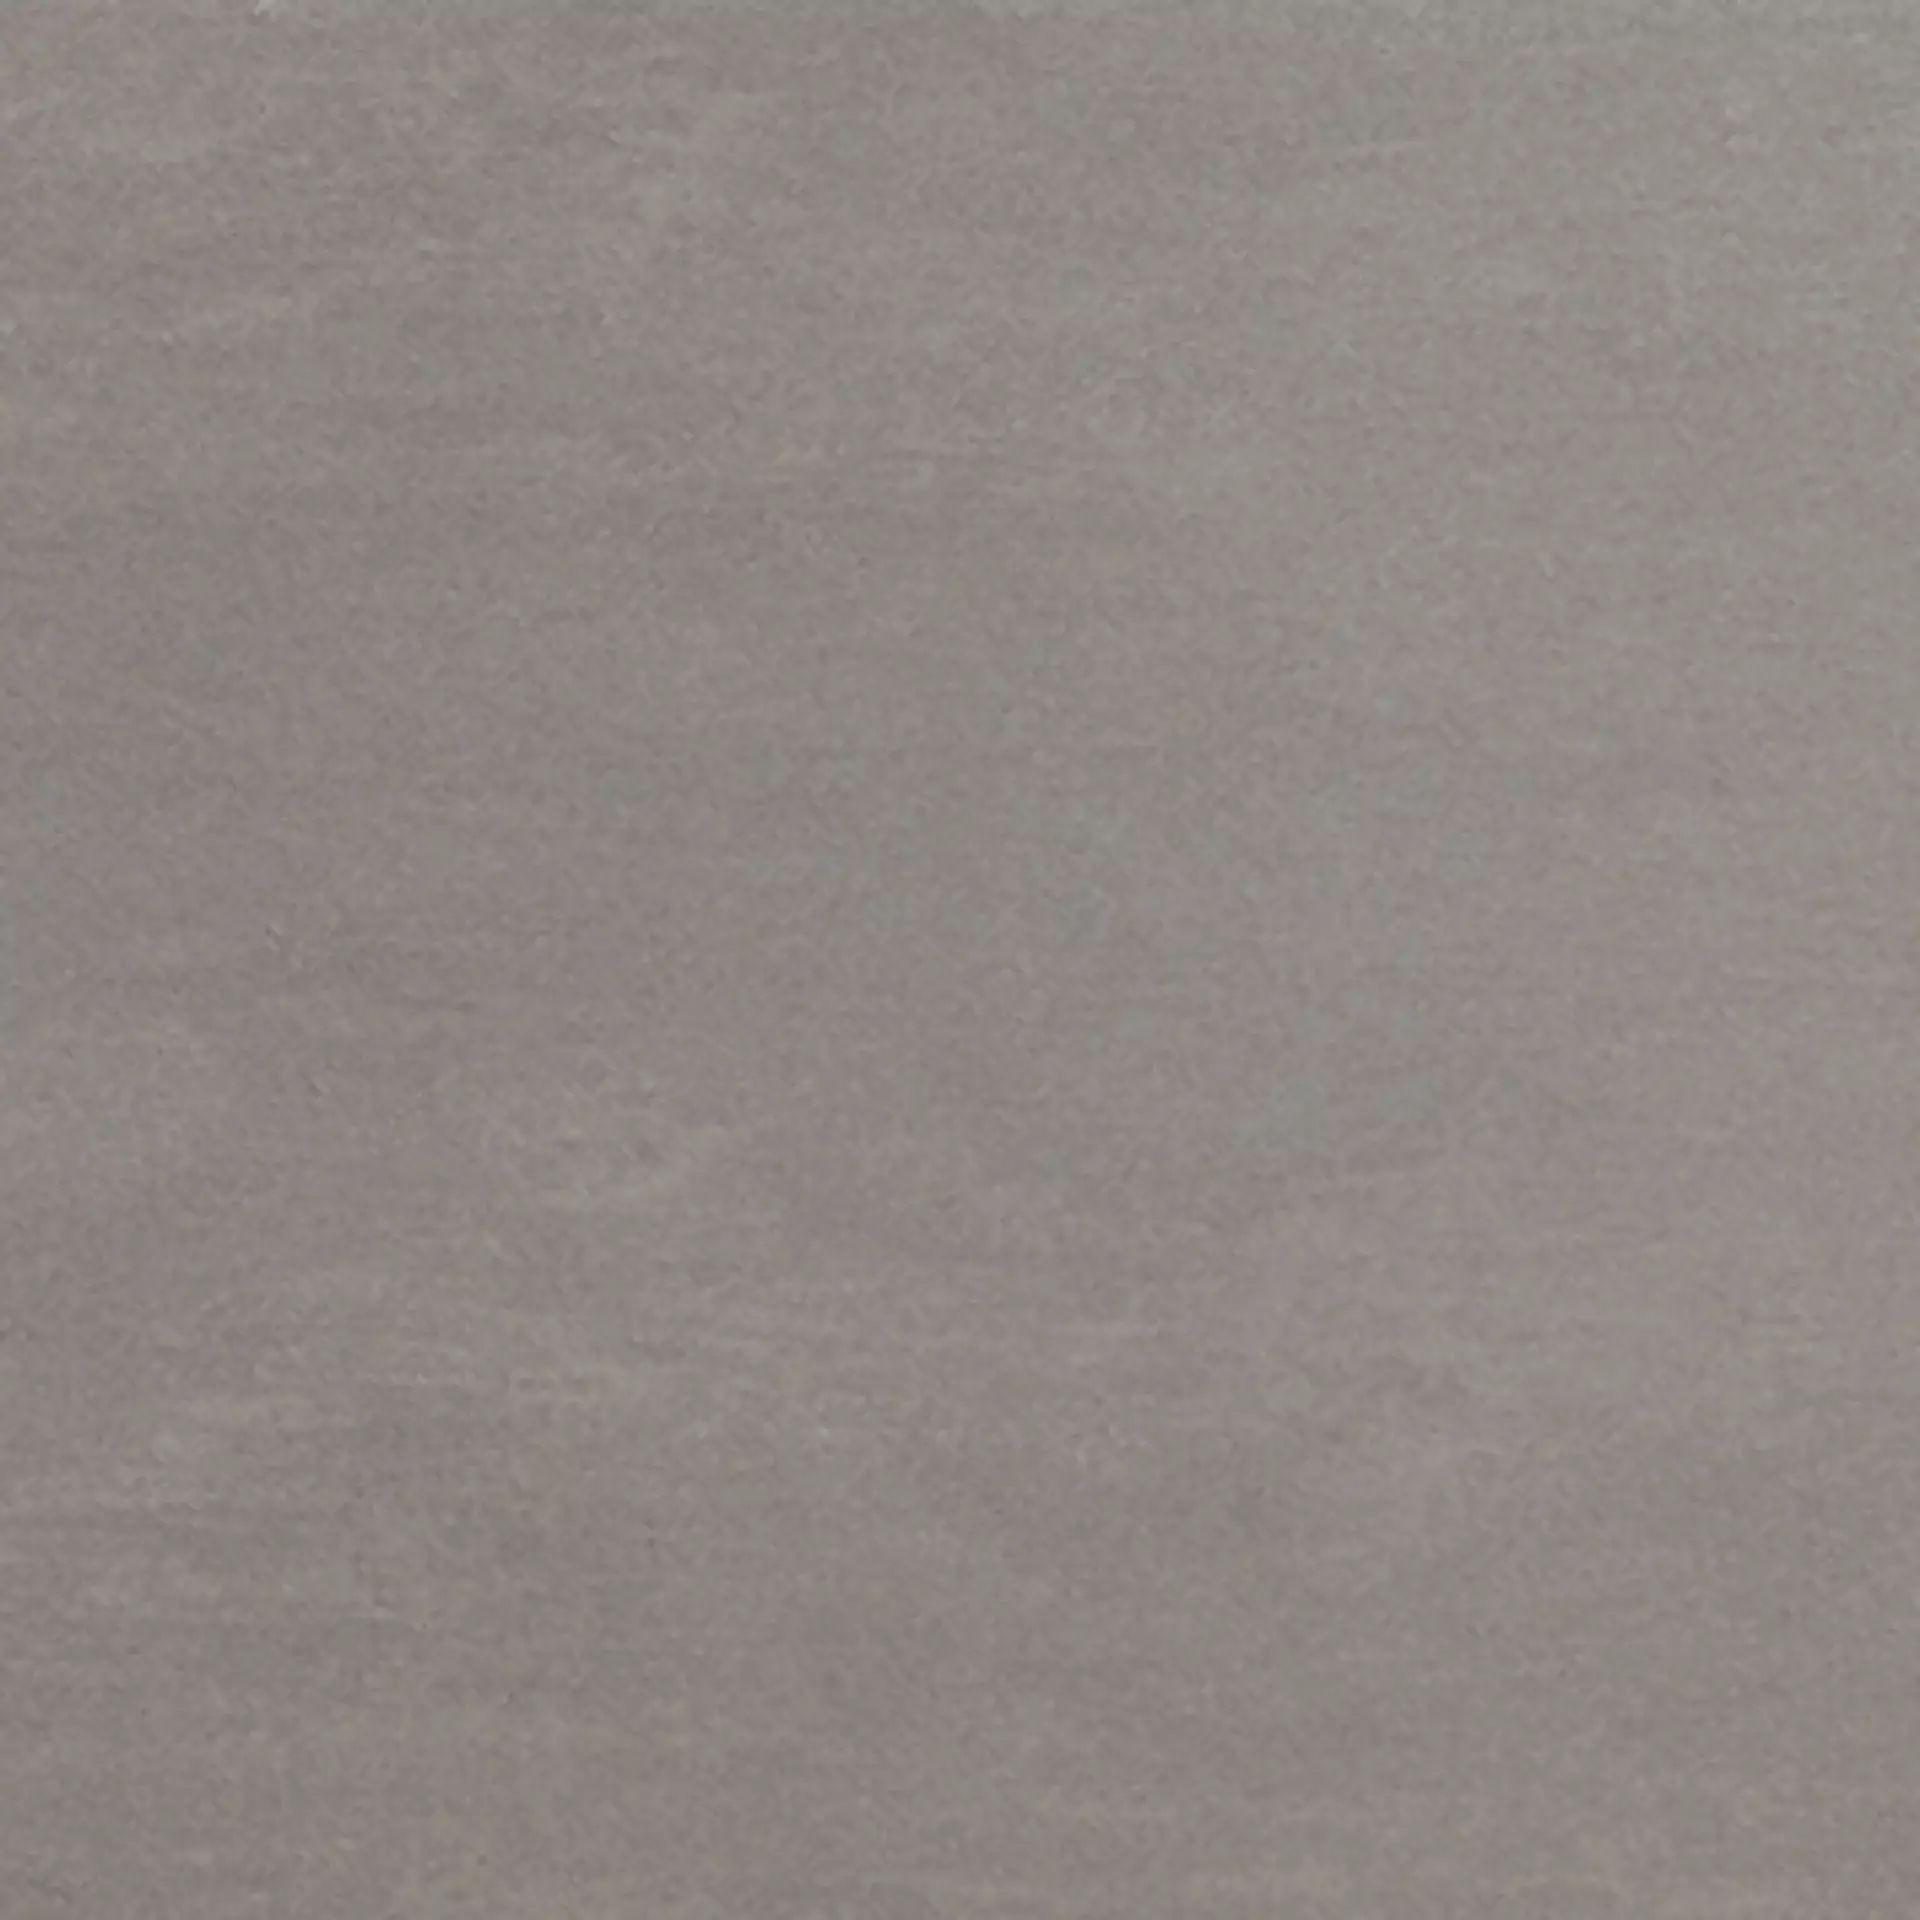 Wandfliese,Bodenfliese Villeroy & Boch Unit Four Medium Grey Matt Medium Grey 2369-CT61 matt 30x30cm 7,5mm